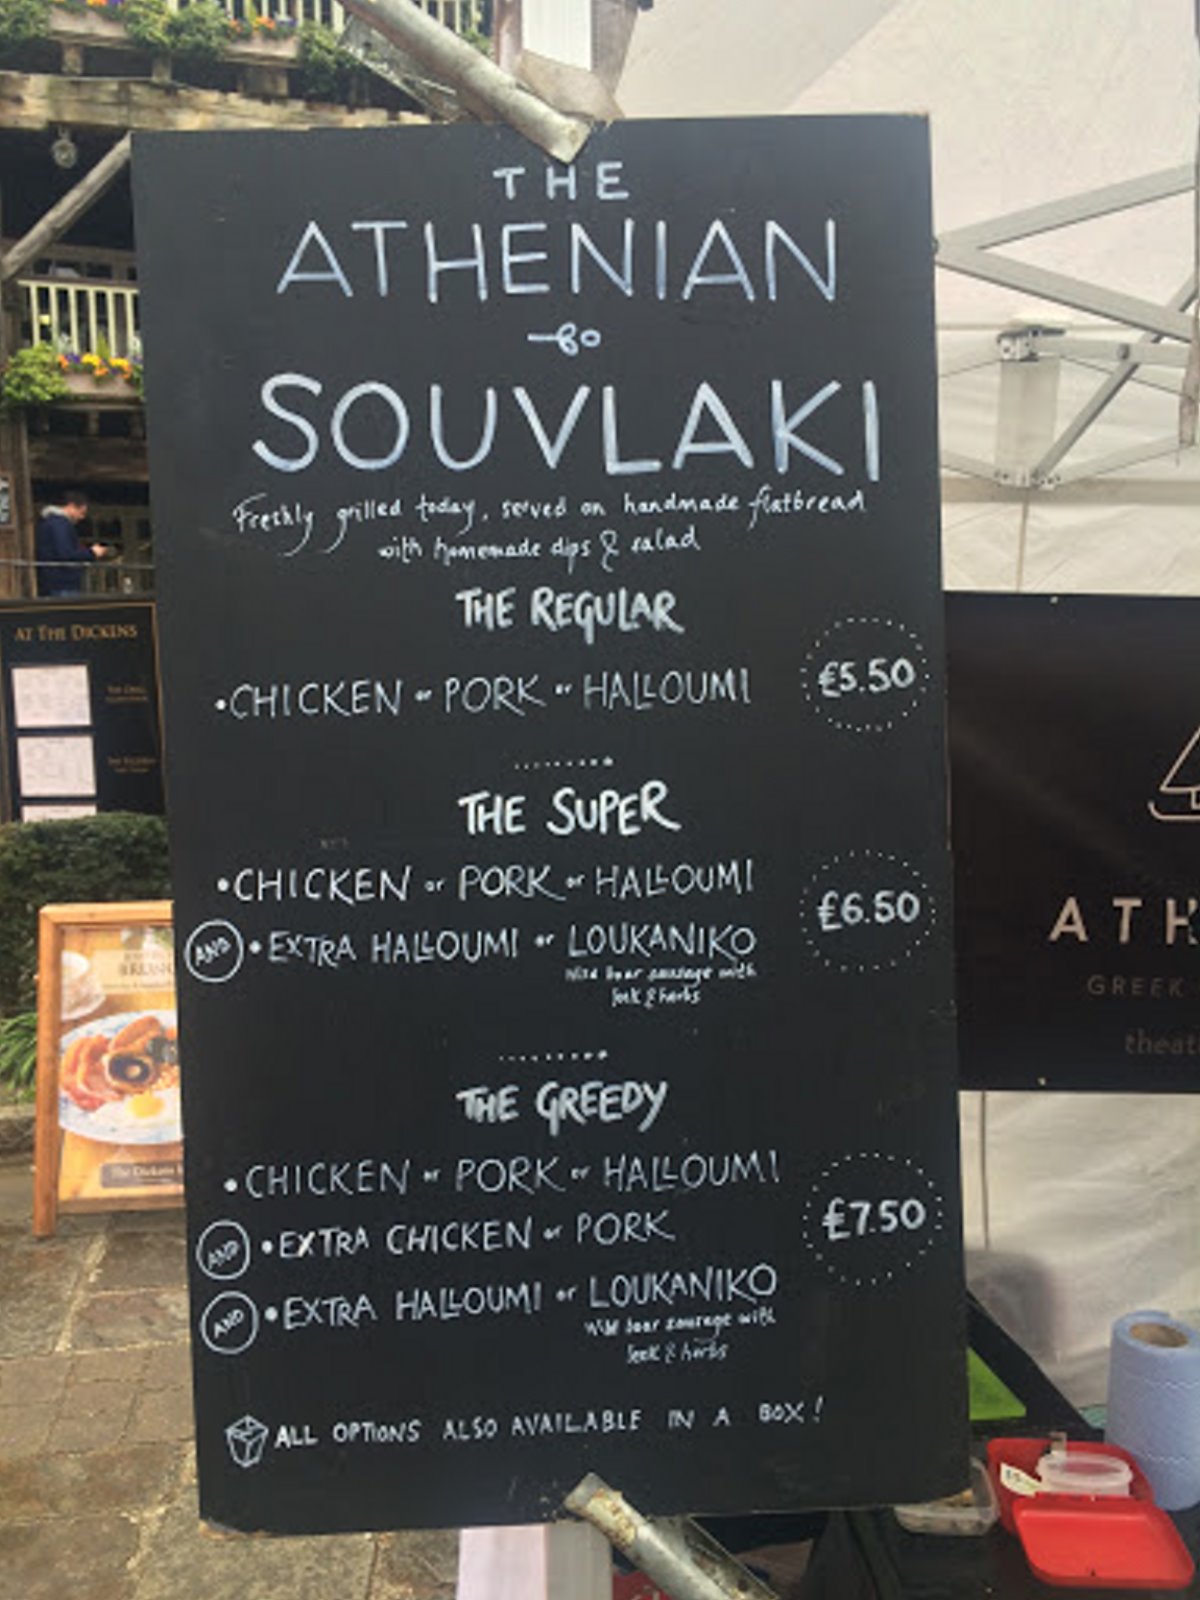 The Athenian Βρετανία σουβλατζίδικο καλύτερο εστιατόριο σε γεύσεις και τιμές